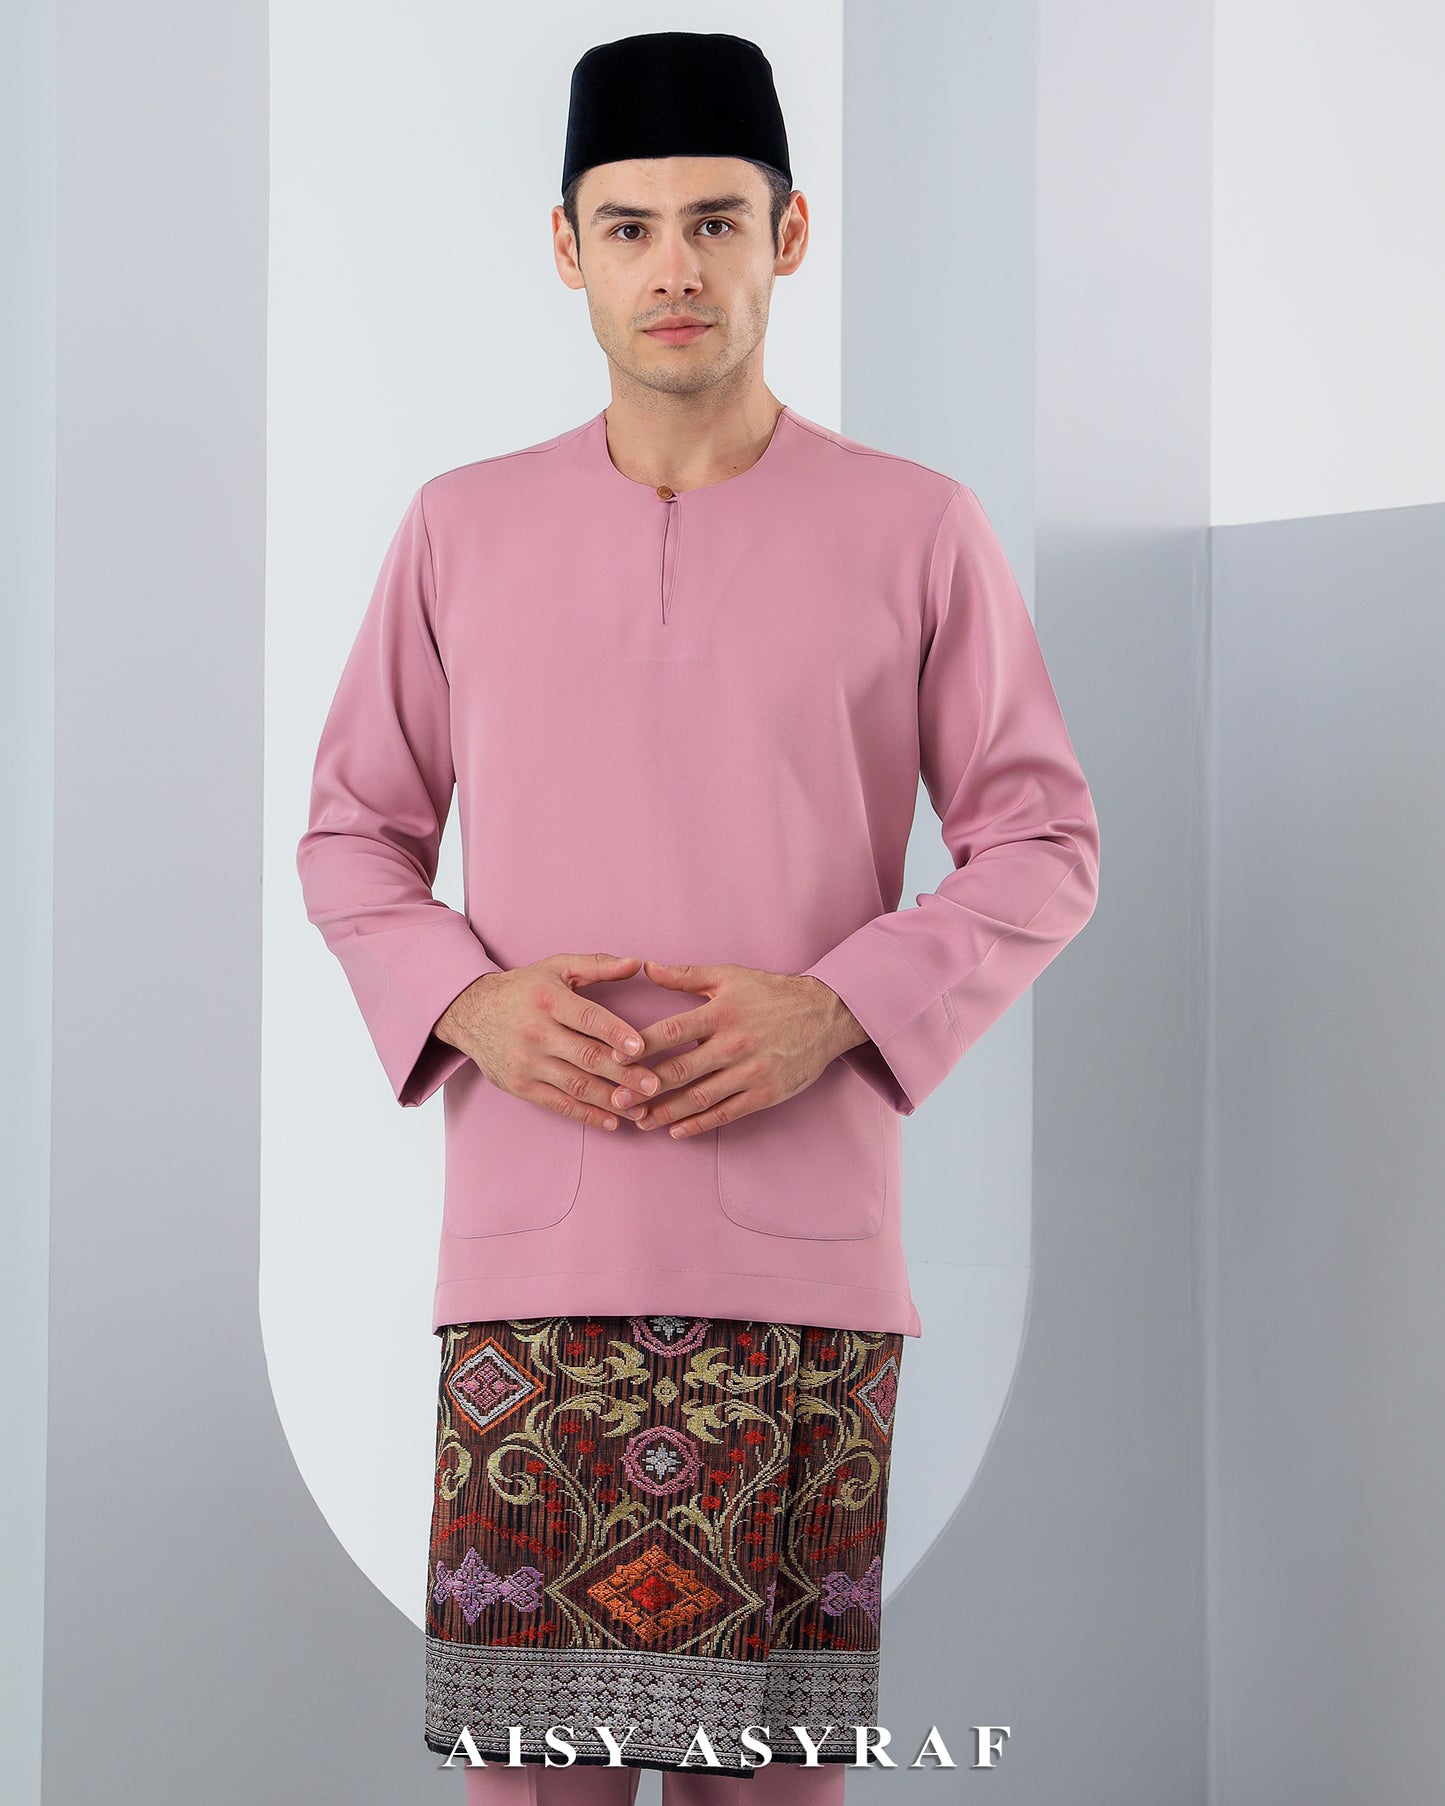 Baju Melayu Antalya - Rose Pink